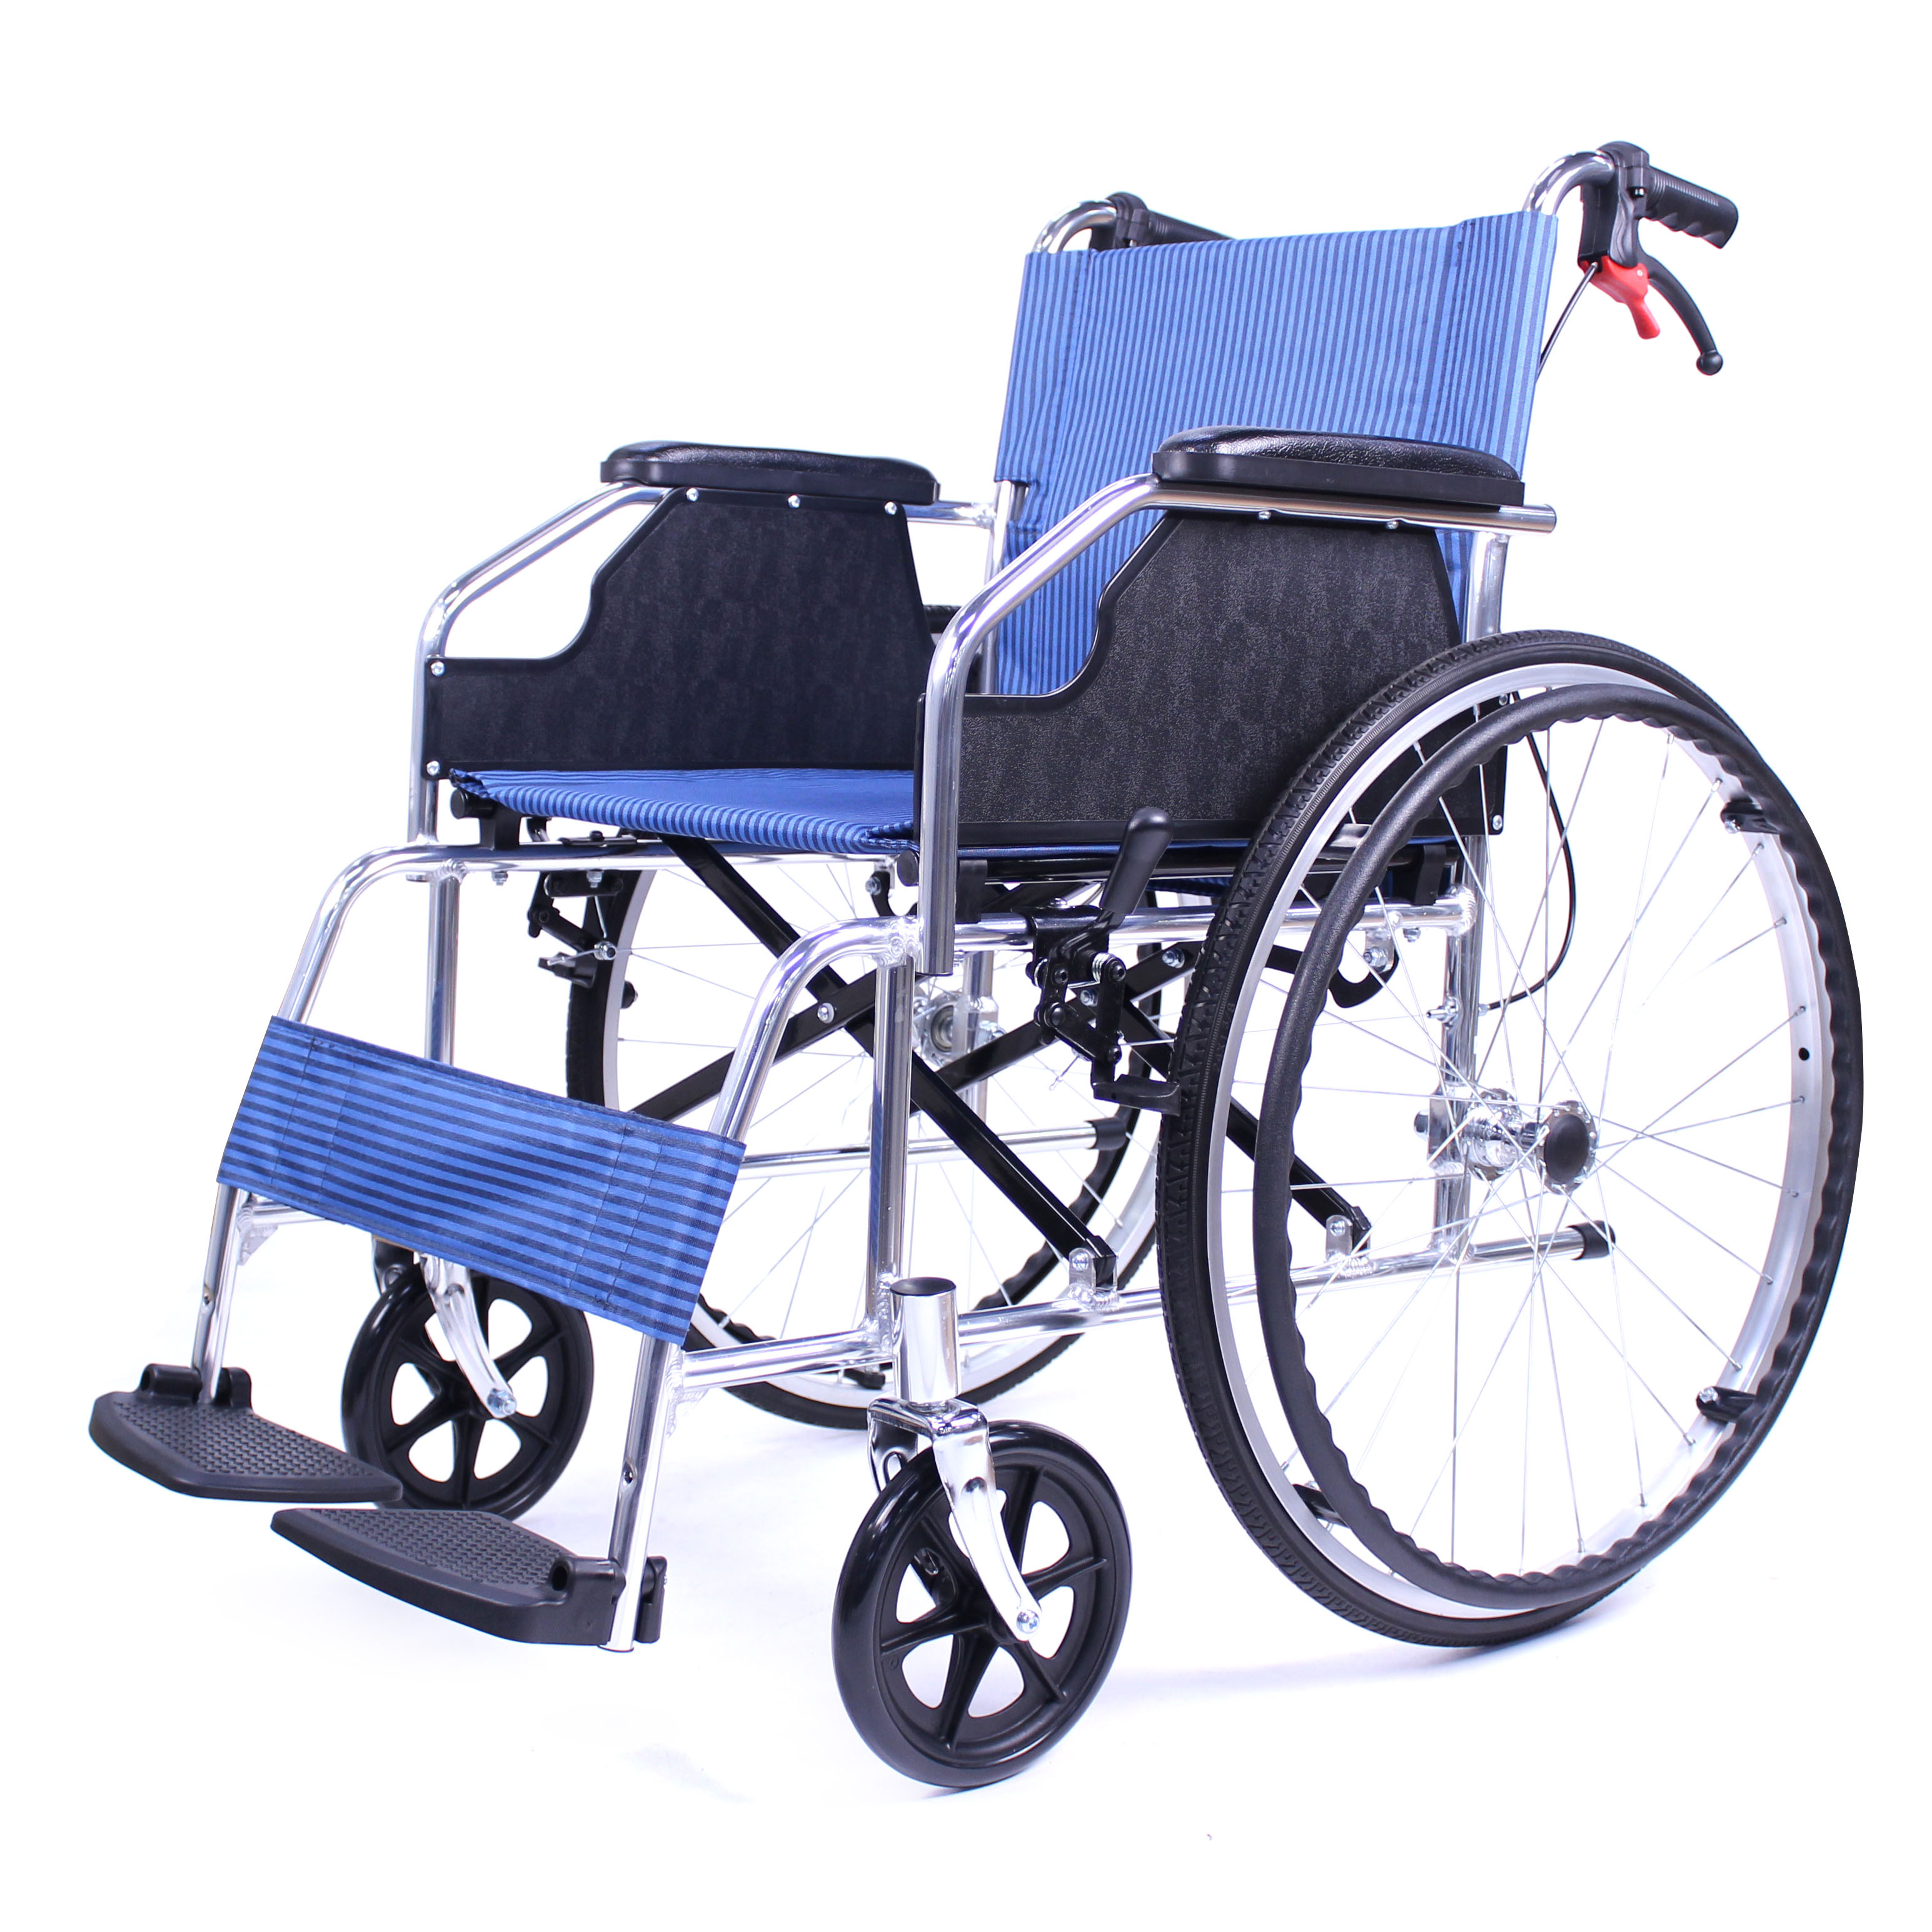 Chine usine fabricant bonne qualité fauteuil roulant pliant en alliage d'aluminium fauteuil roulant